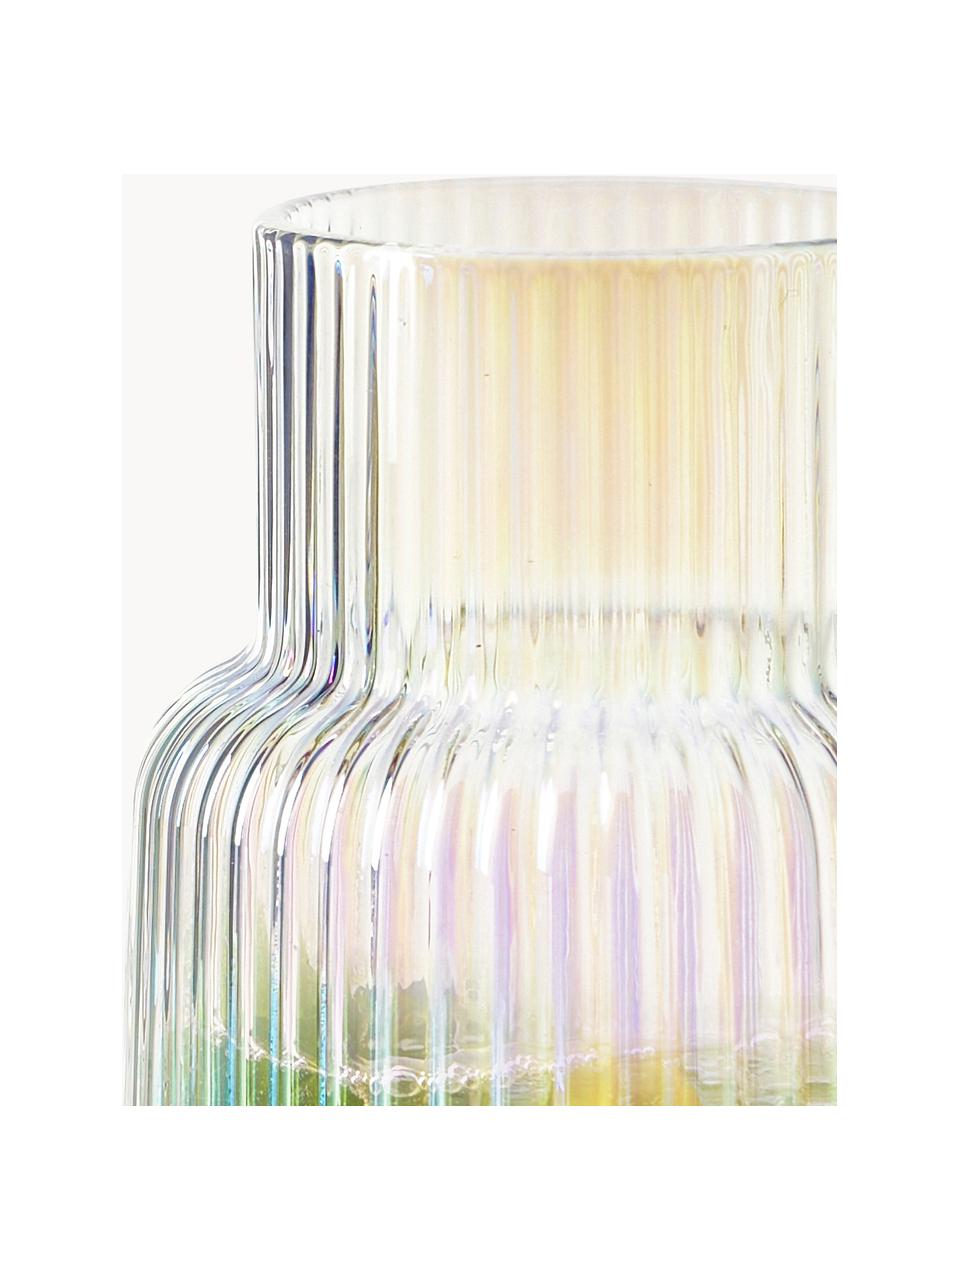 Caraffa acqua con superficie iridescente e superficie scanalata Minna, 1,1 L, Vetro soffiato, Cromo trasparente, iridescente, 1.1 L